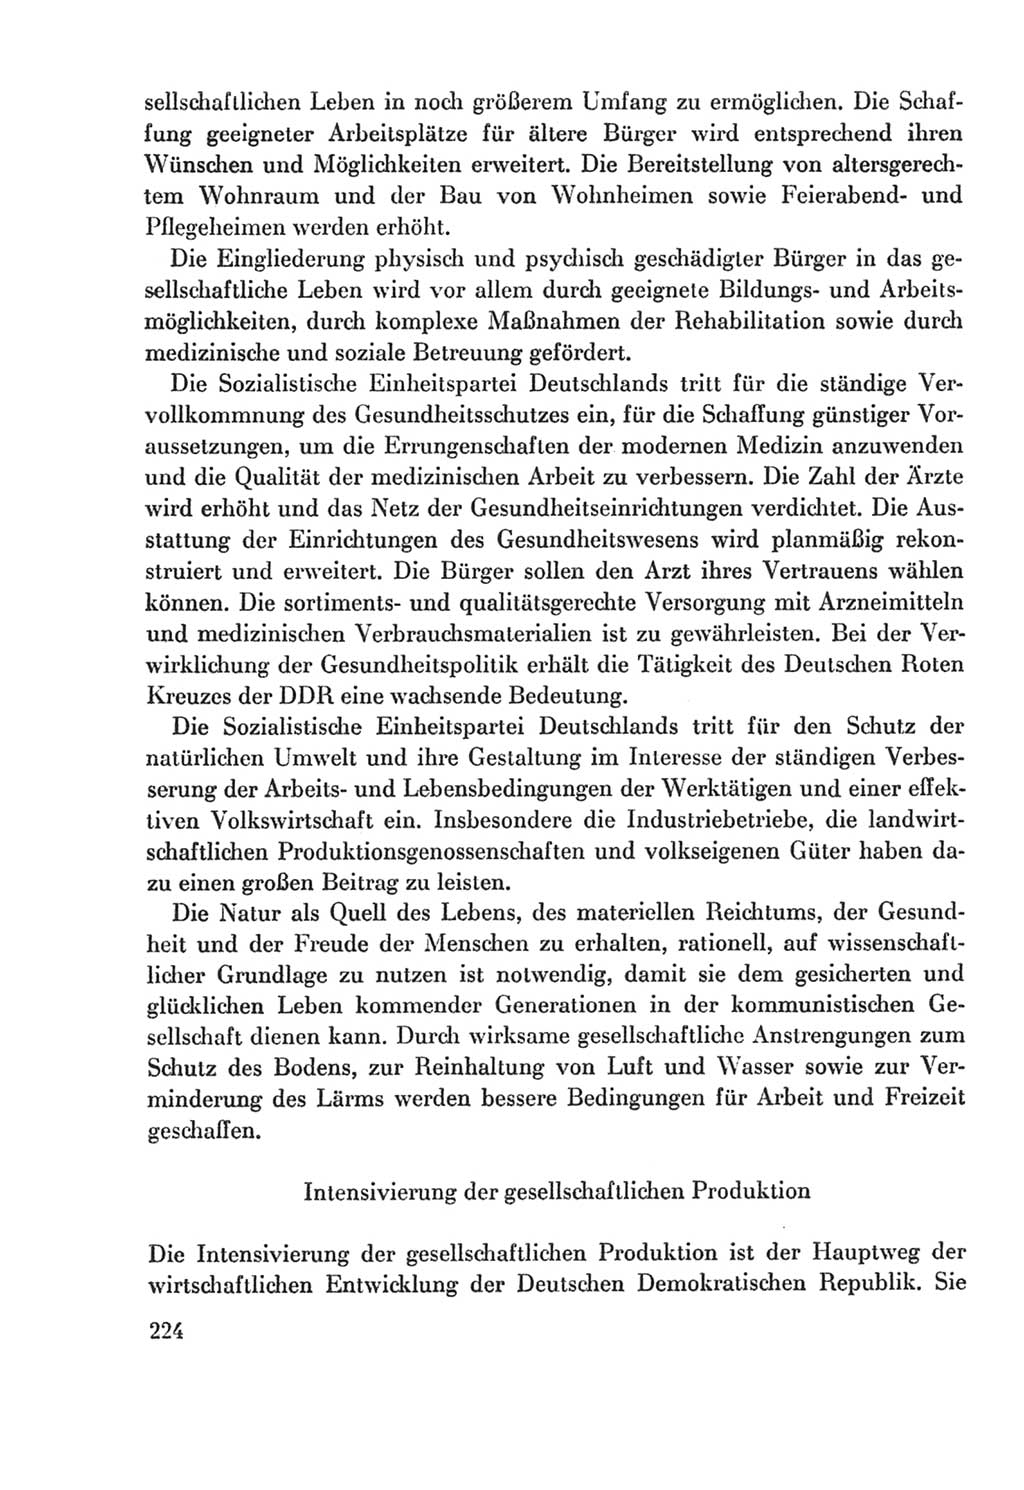 Protokoll der Verhandlungen des Ⅸ. Parteitages der Sozialistischen Einheitspartei Deutschlands (SED) [Deutsche Demokratische Republik (DDR)] 1976, Band 2, Seite 224 (Prot. Verh. Ⅸ. PT SED DDR 1976, Bd. 2, S. 224)